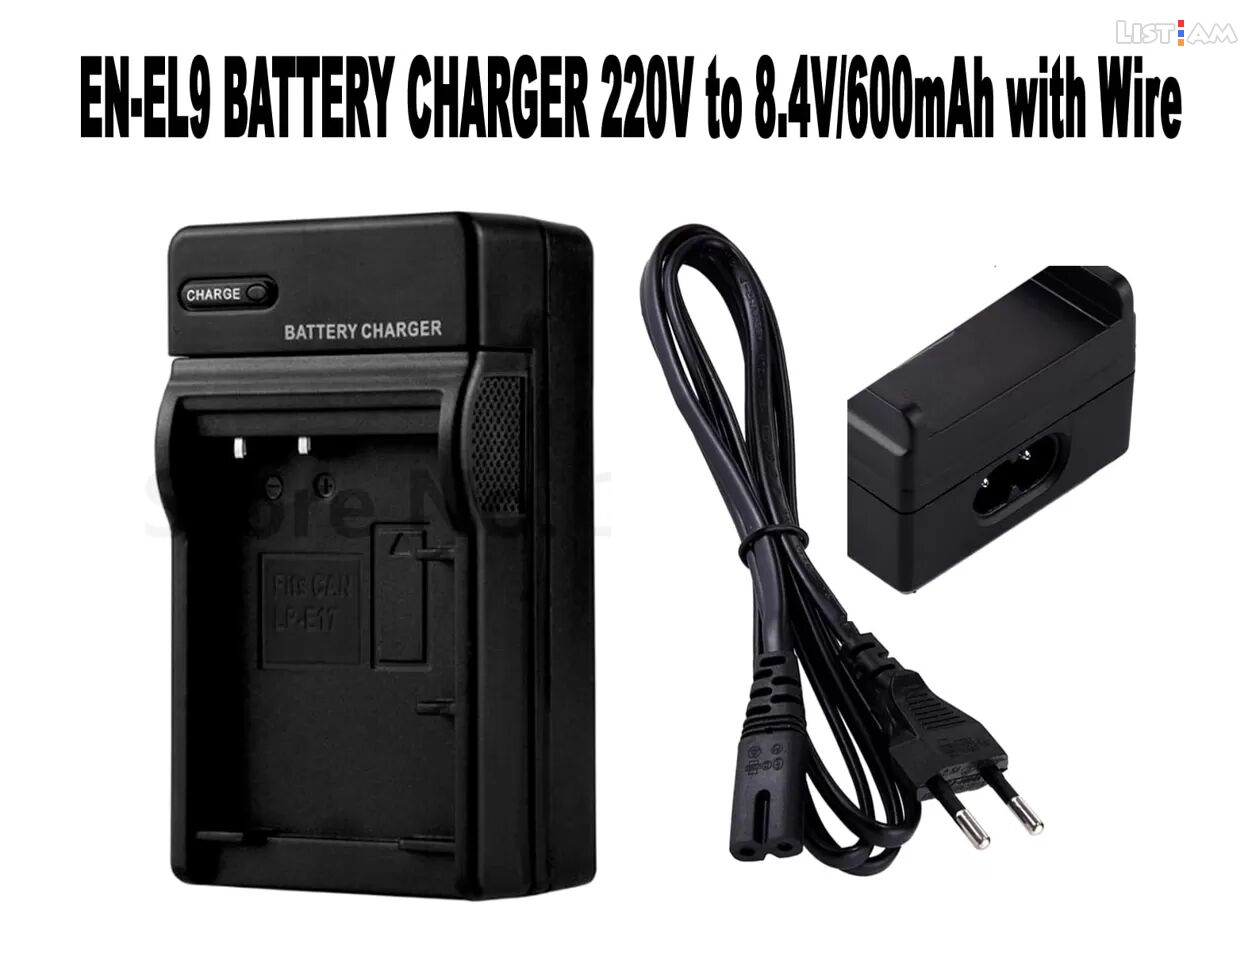 EN-El9 Battery